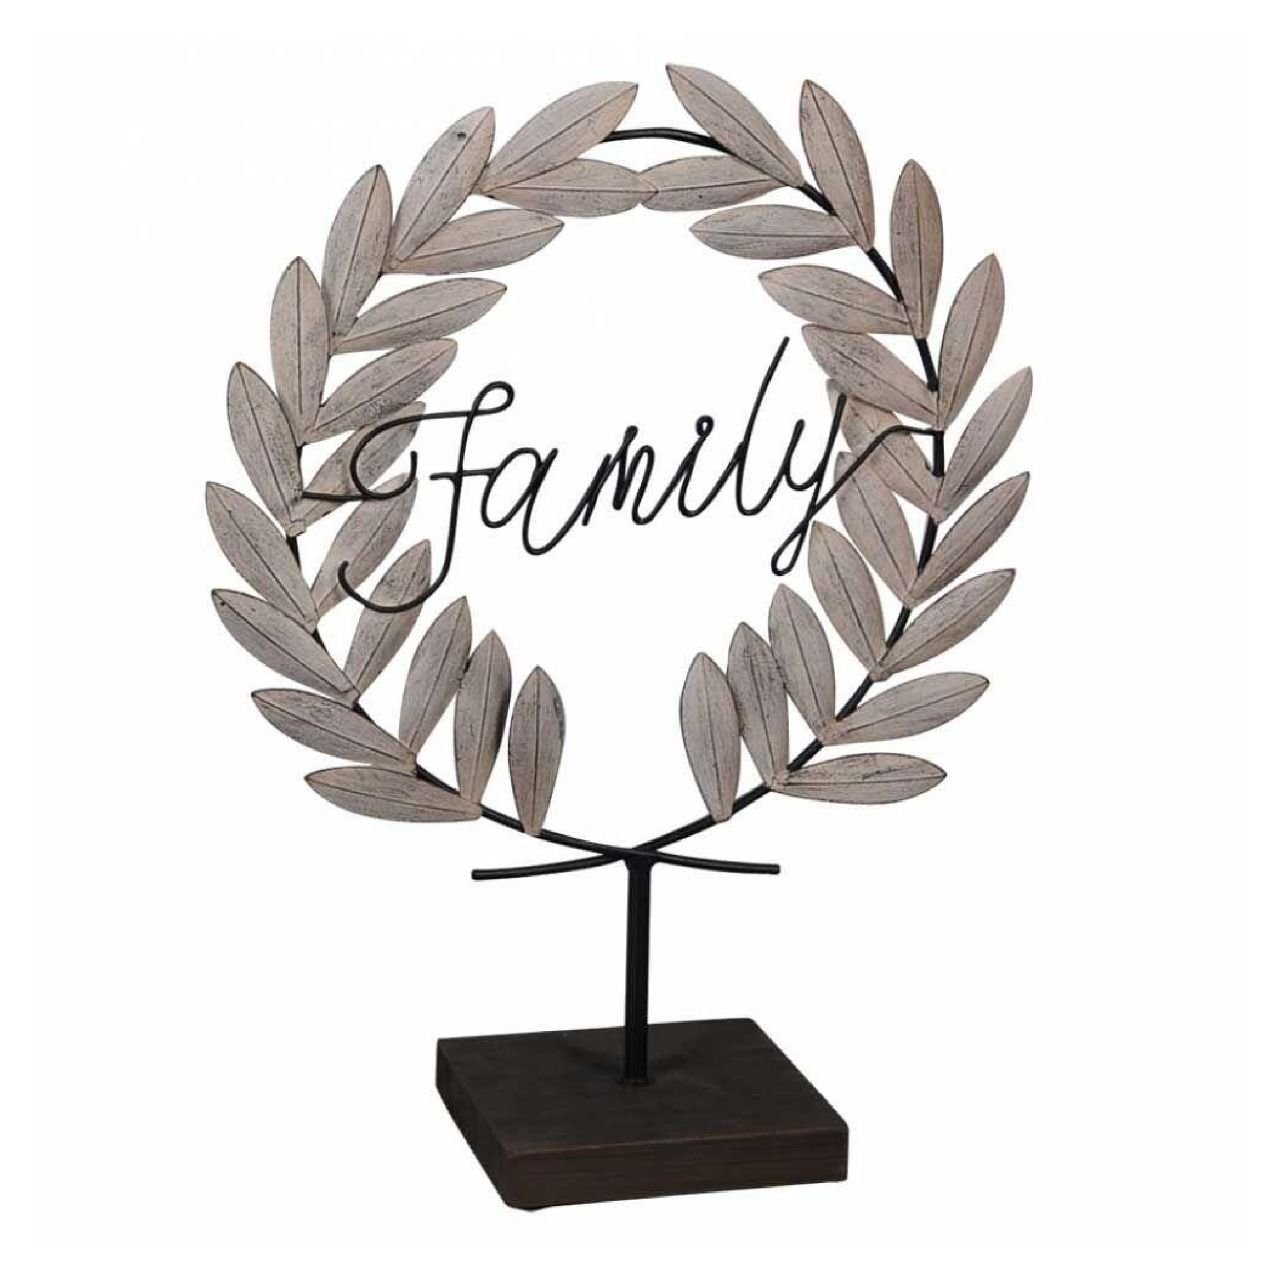 Placa Decorativa em Metal Family (Família) 47x37cm